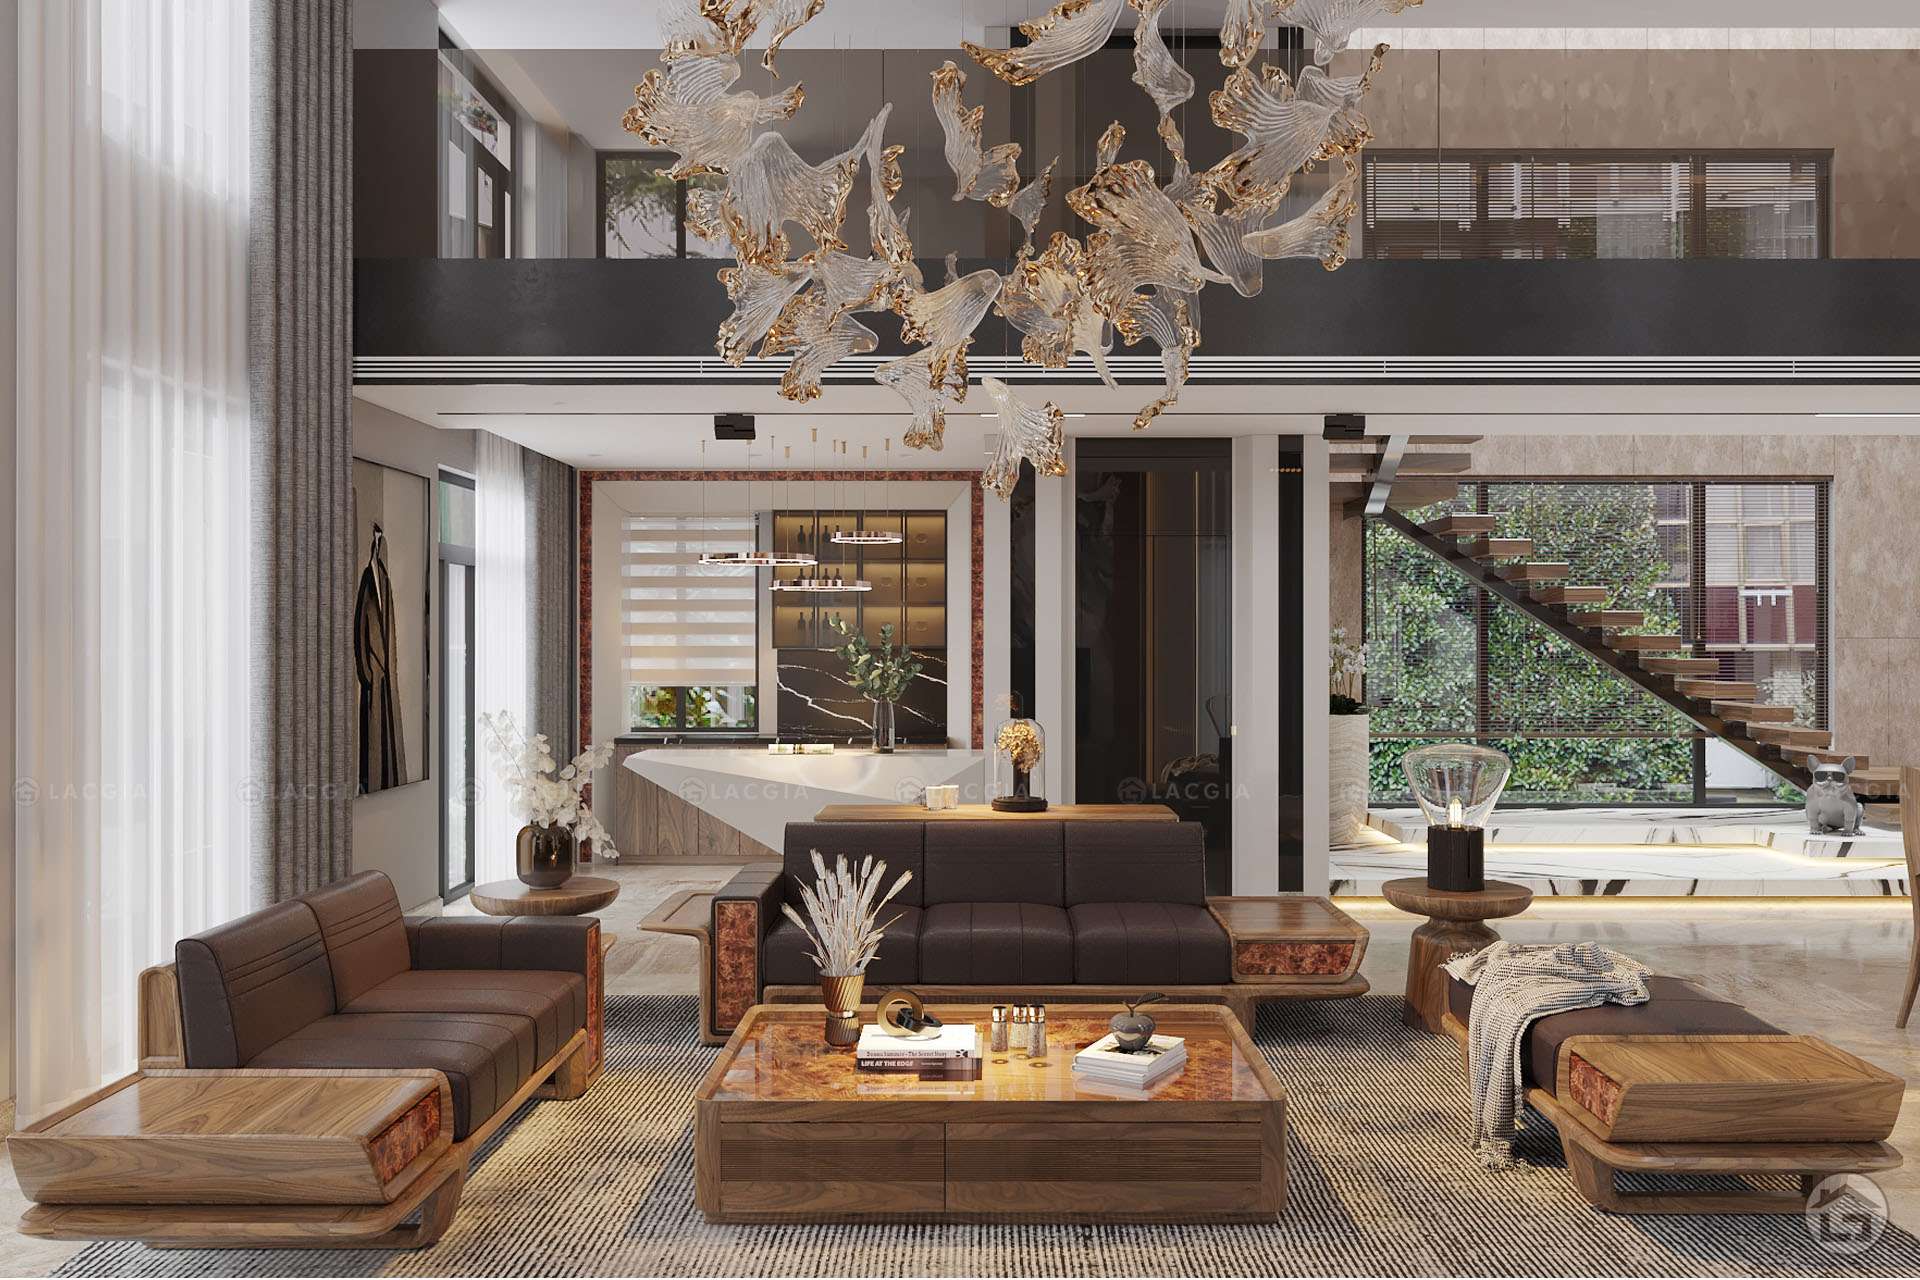 Mẫu nội thất nhà vườn đẹp kiểu tân cổ điển đồ gỗ 2022